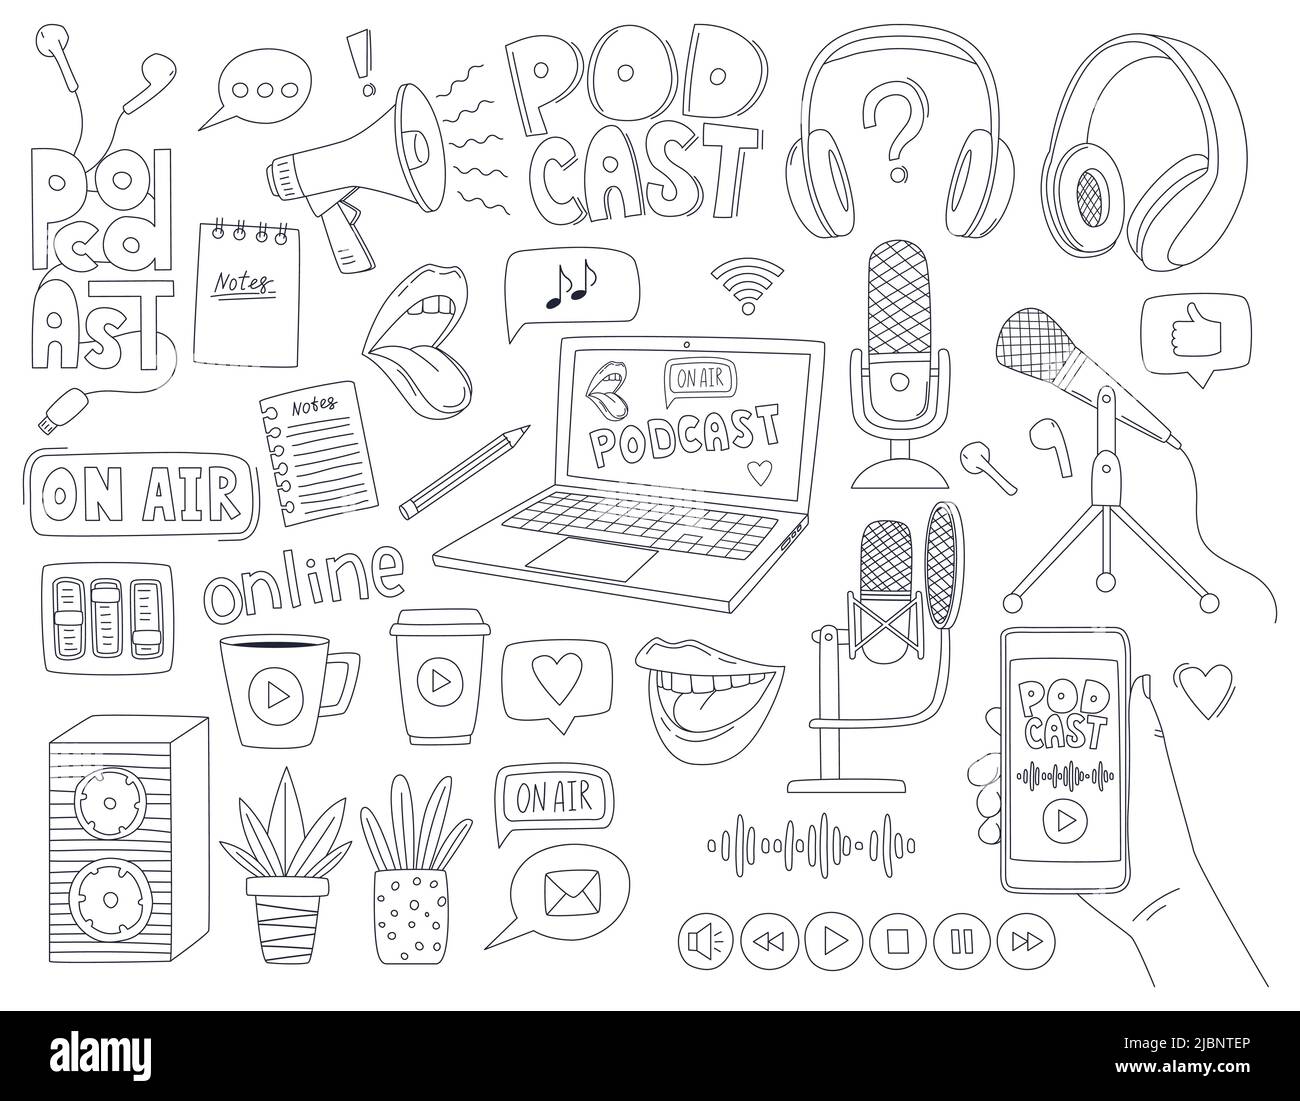 Satz von Doodle skizzieren Symbole eines Podcasts, Radio-Show, Broadcast. Mikrofone, Laptop, Kopfhörer, Megaphon, Schriftzug. Lineare Zierelemente. Stock Vektor